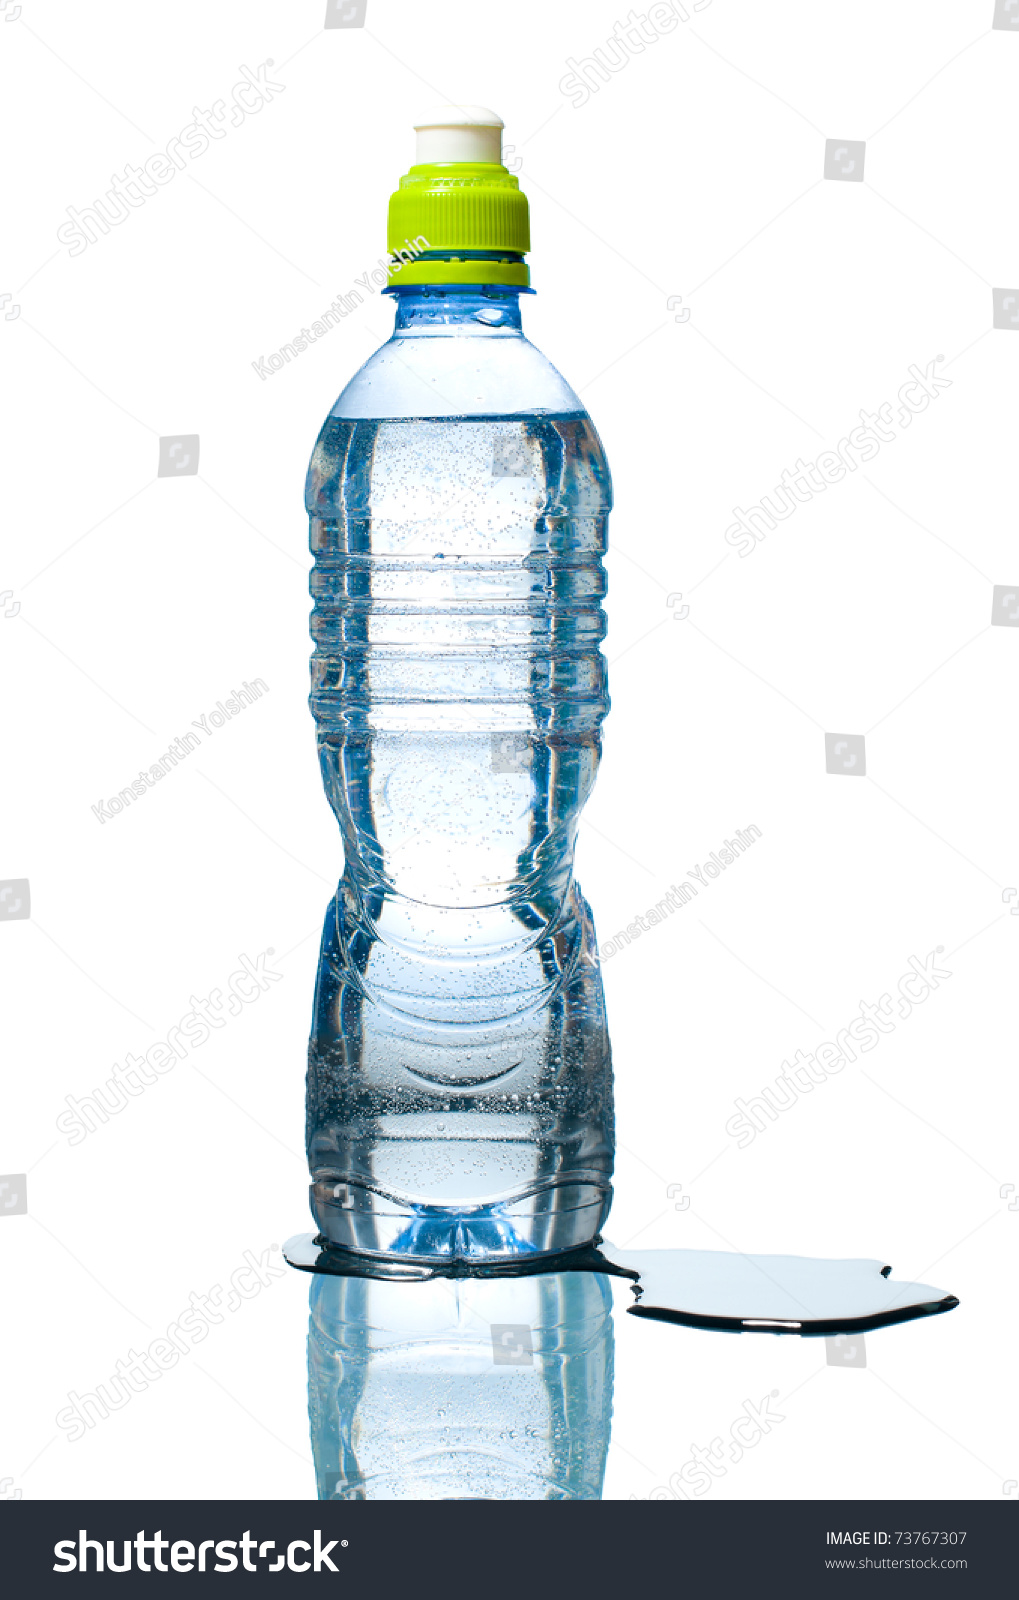 Возьми пустую пластиковую бутылку с завинчивающейся. Пластмассовая бутылка с дыркой. Дырявая бутылка с водой. Вода из бутылки. Бутылка с дырками и водой.